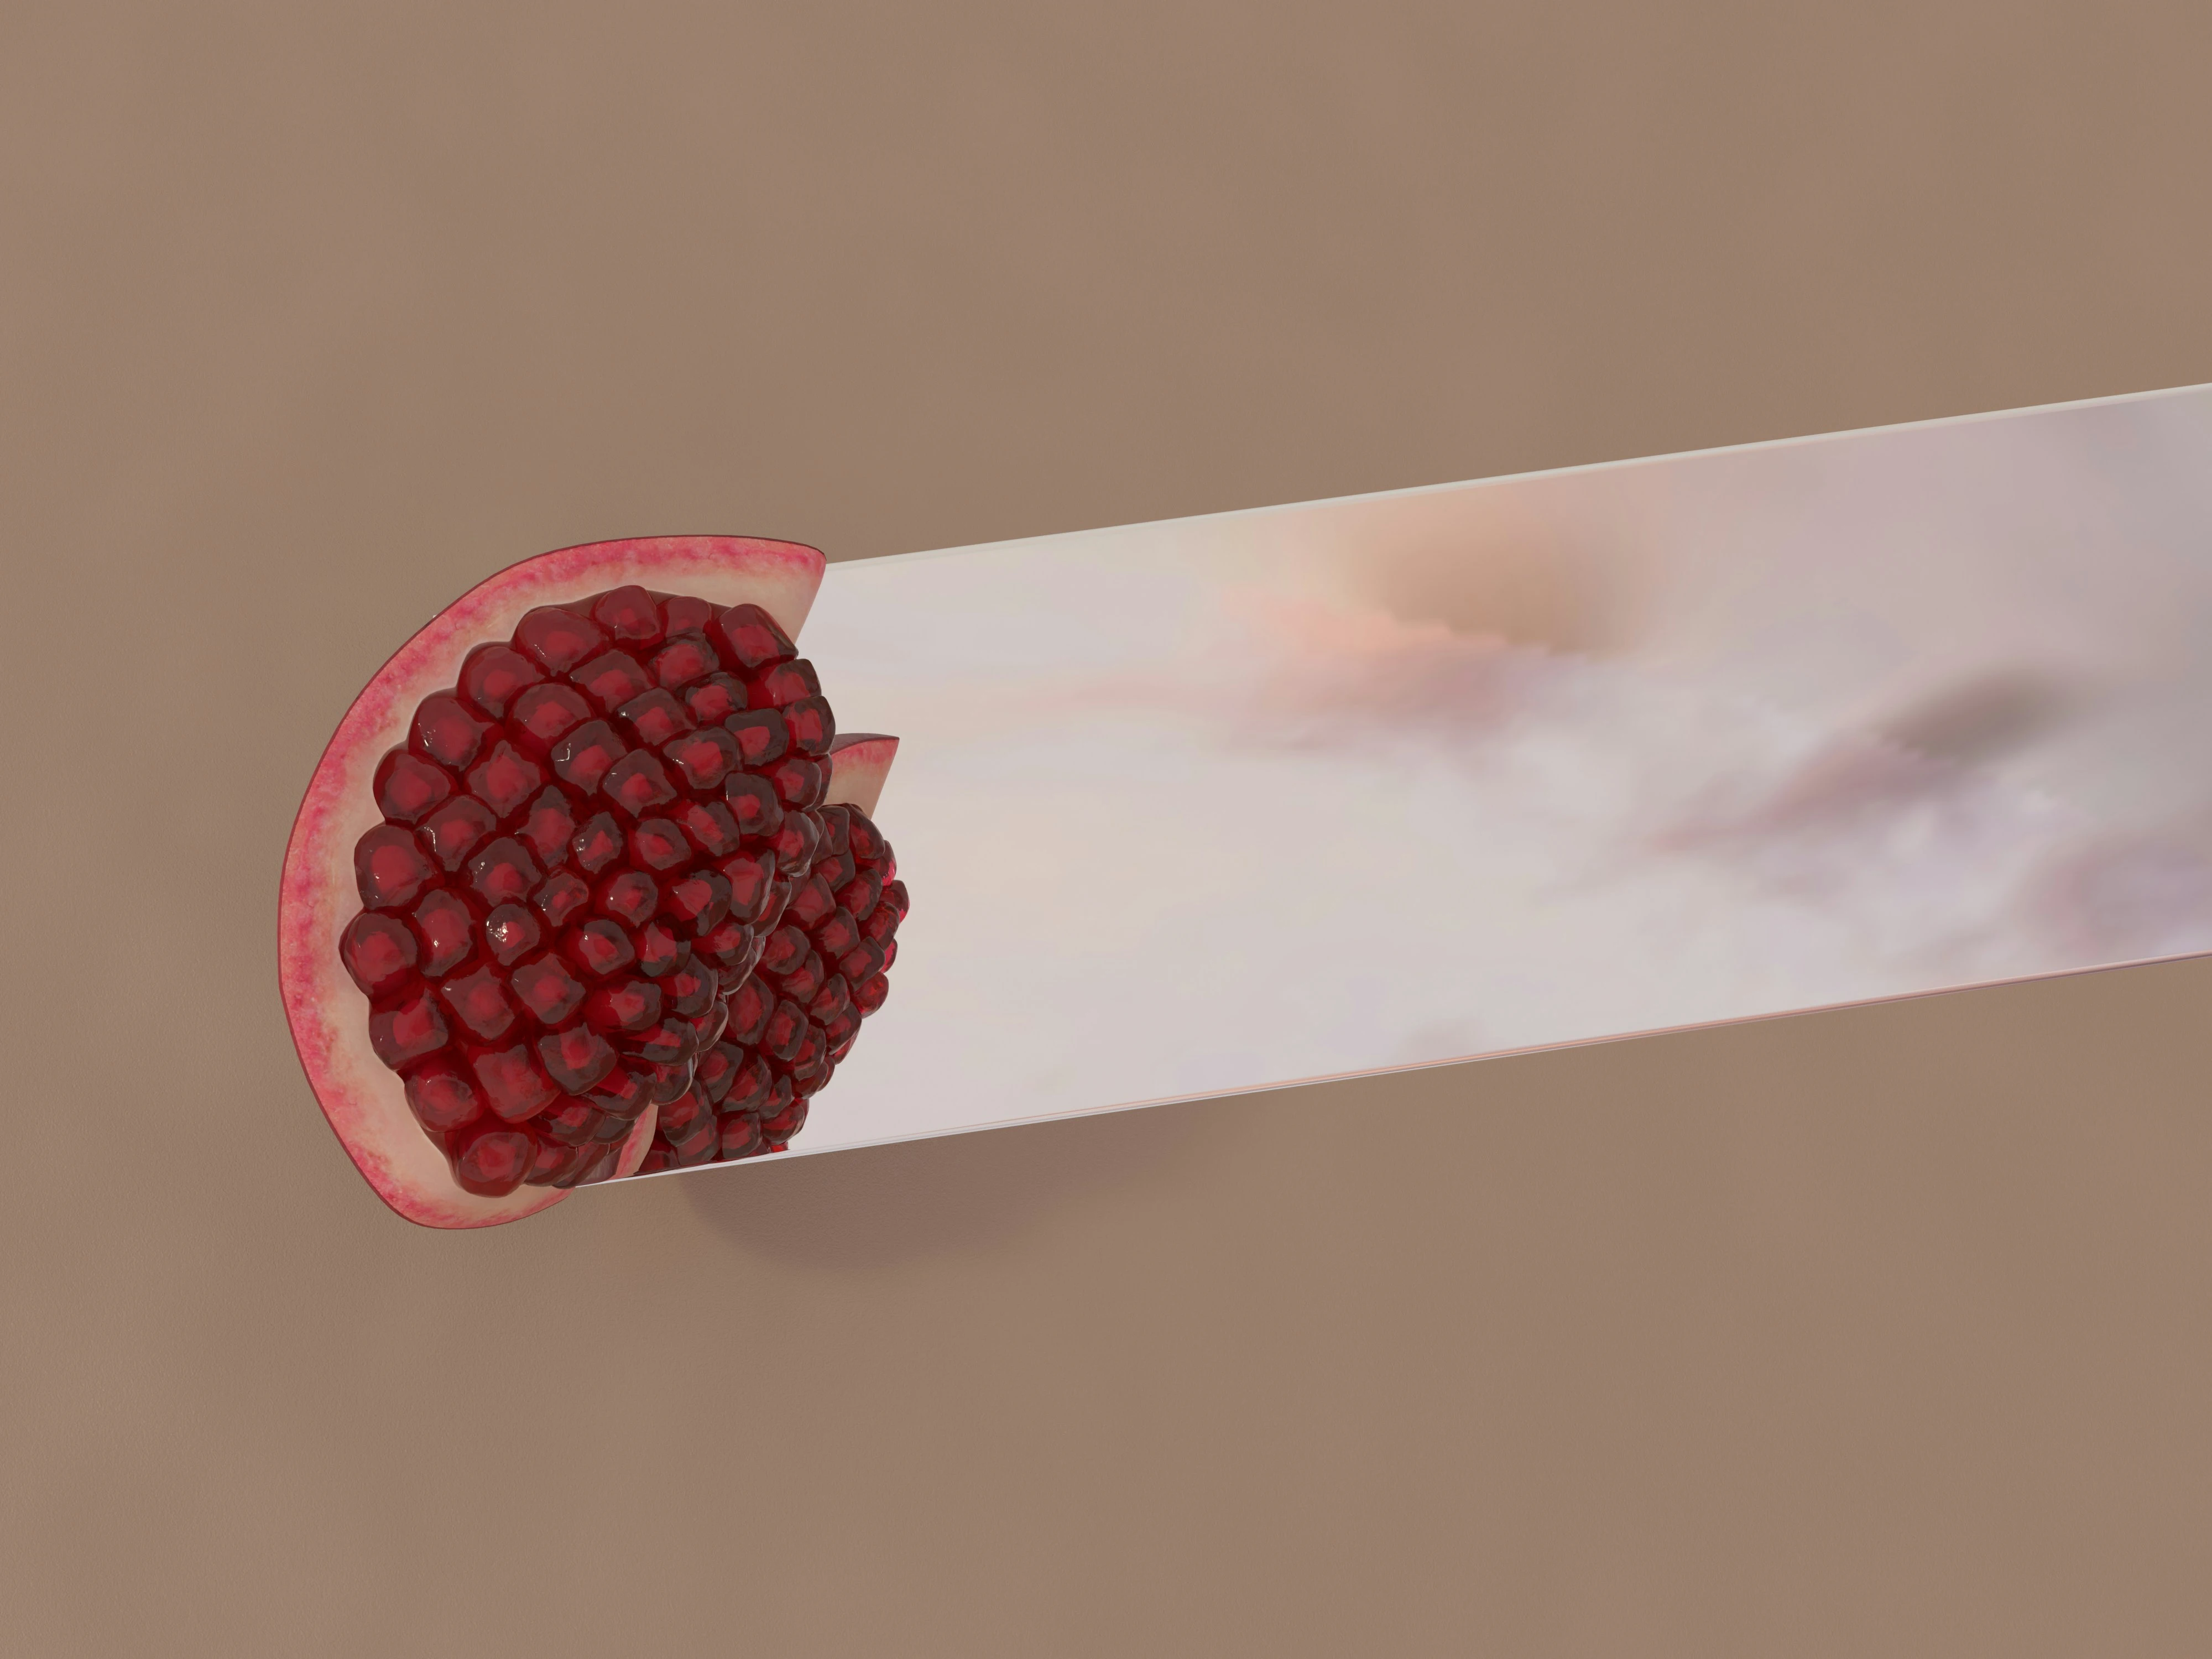 fausse cigarette illustrant les effets nocifs du tabac